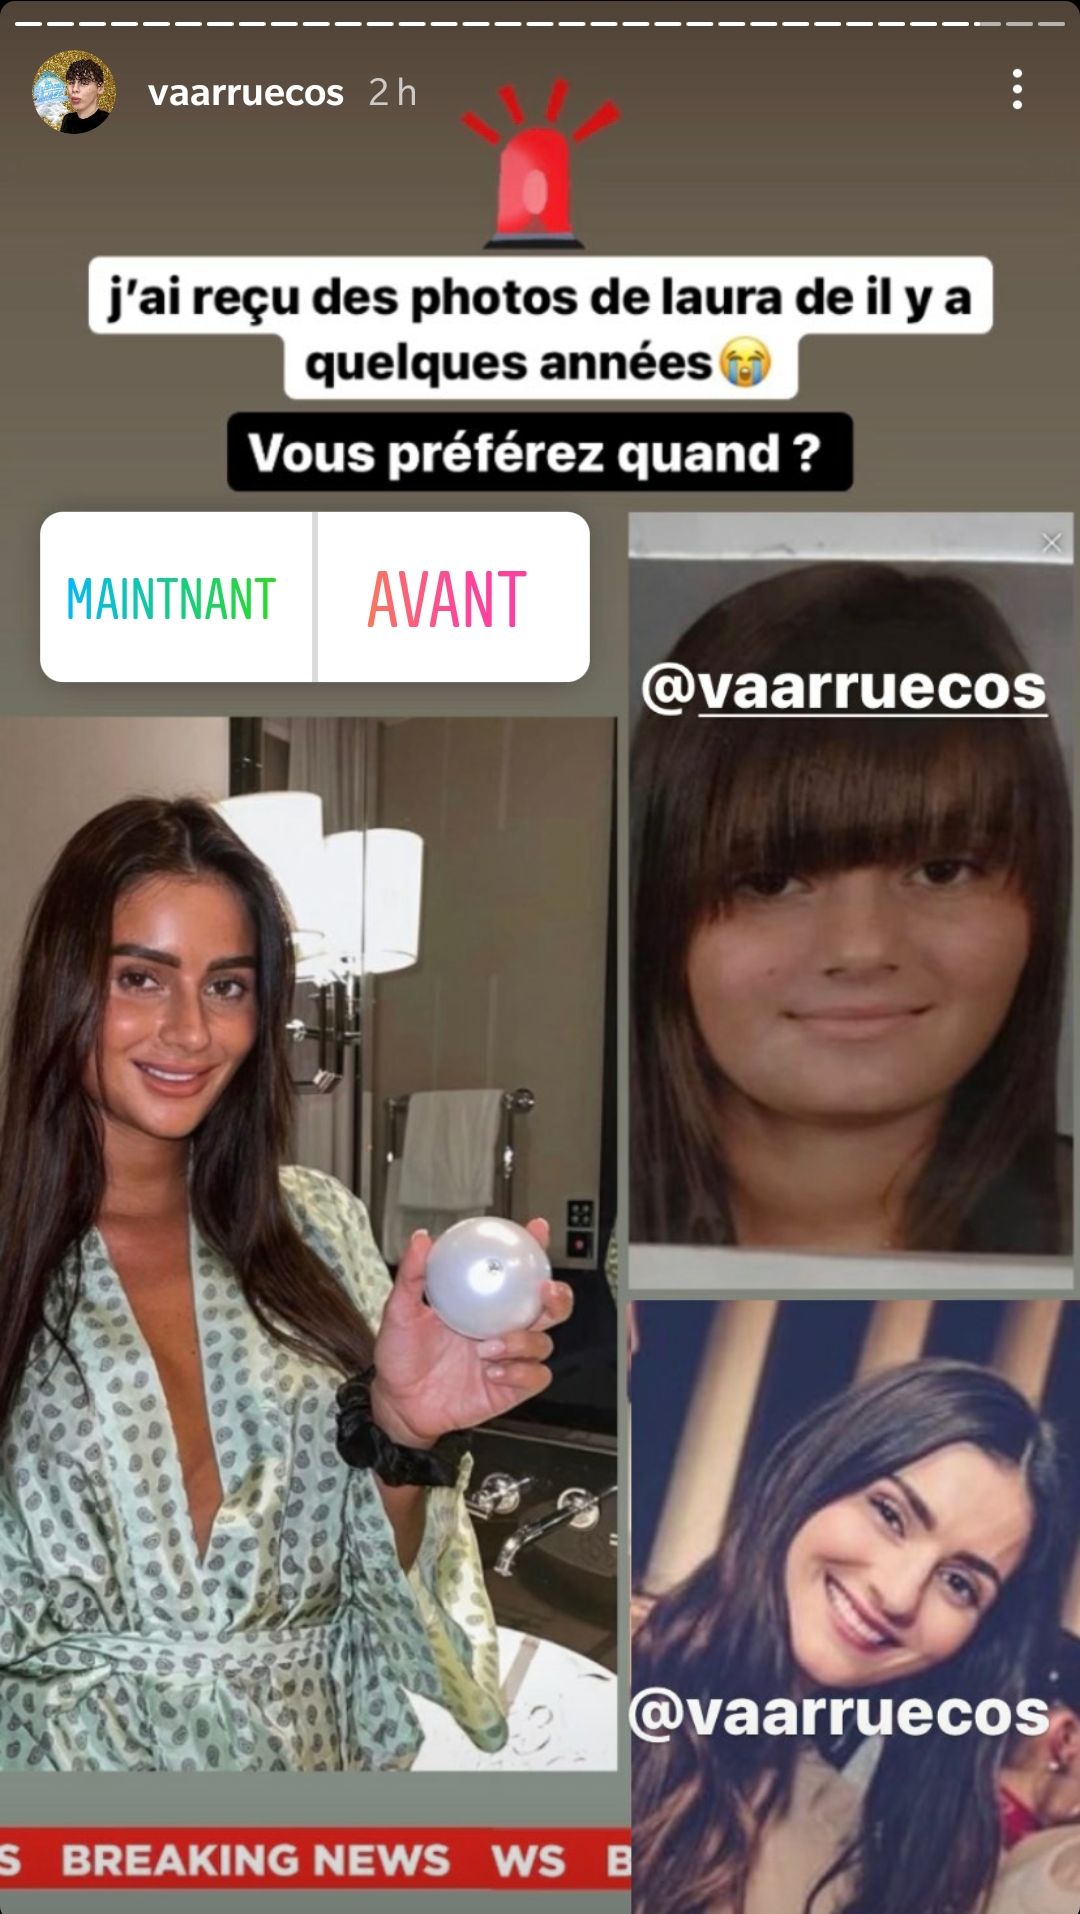  Laura des Marseillais plus jeune dévoilée par Vaarruecos @Instagram